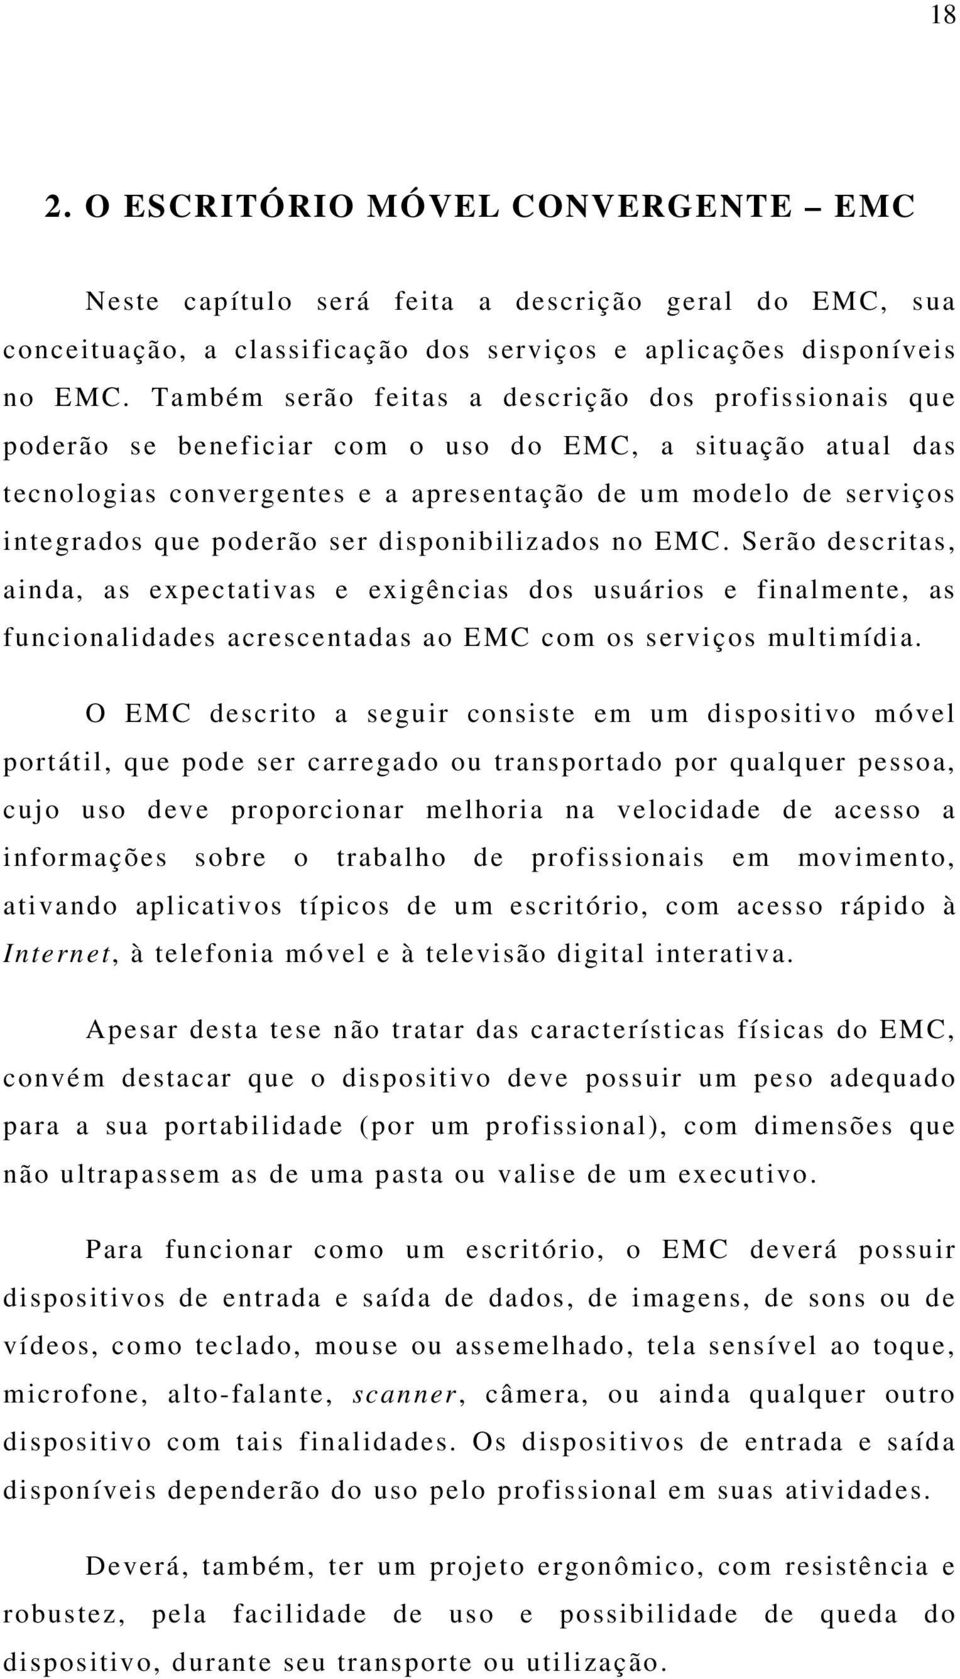 poderão ser disponibilizados no EMC. Serão descritas, ainda, as expectativas e exigências dos usuários e finalmente, as funcionalidades acrescentadas ao EMC com os serviços multimídia.